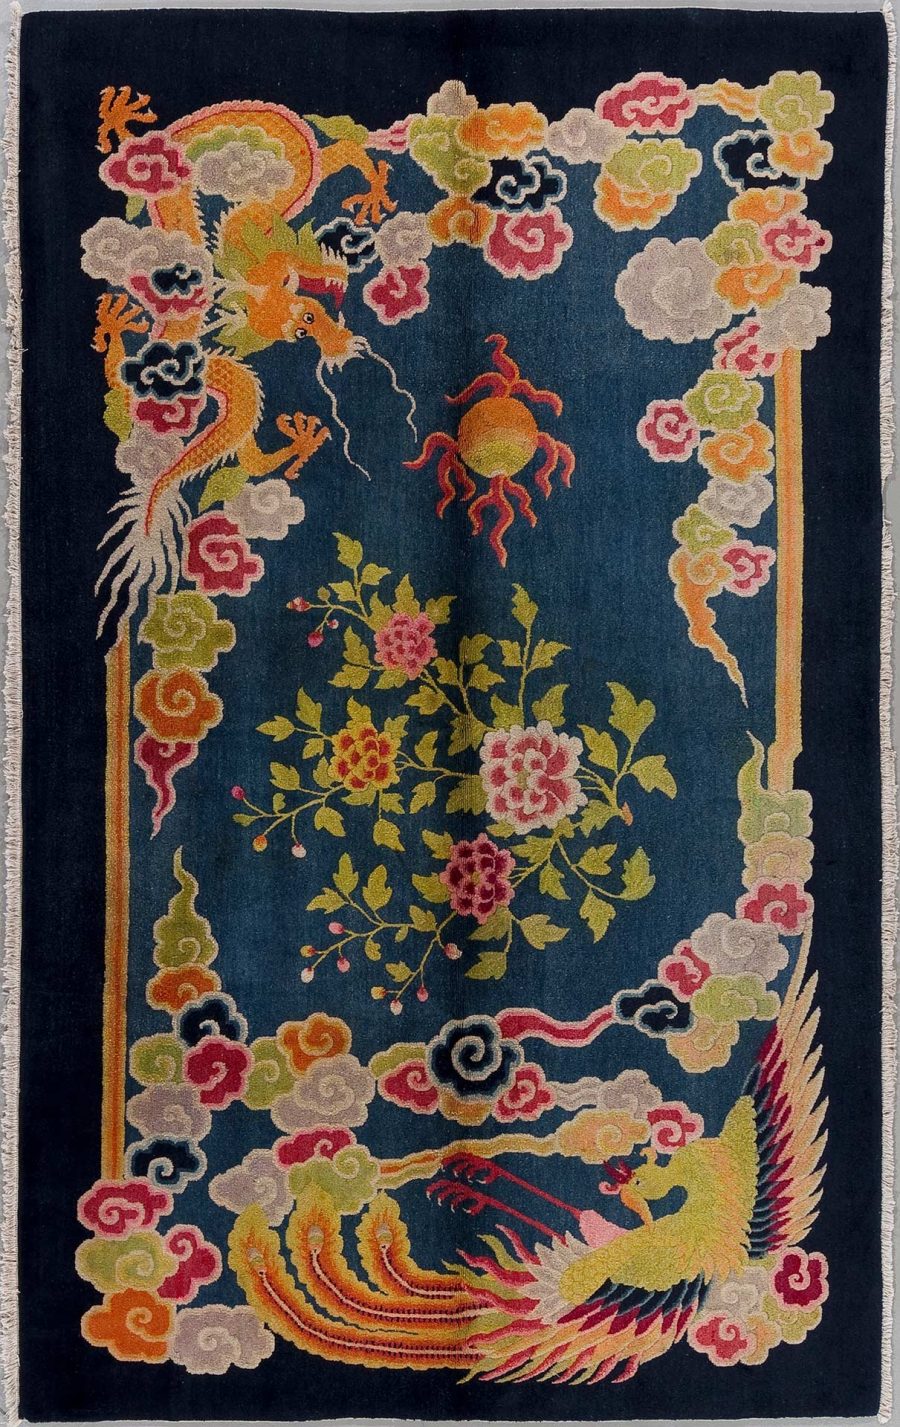 Antik wirkender, orientalischer Teppich mit dunkelblauem Grund, darauf sind ein roter Phoenix und ein orangefarbener Drache neben blühenden Pflanzen und Wolkenmotiven in lebendigen Farben abgebildet.